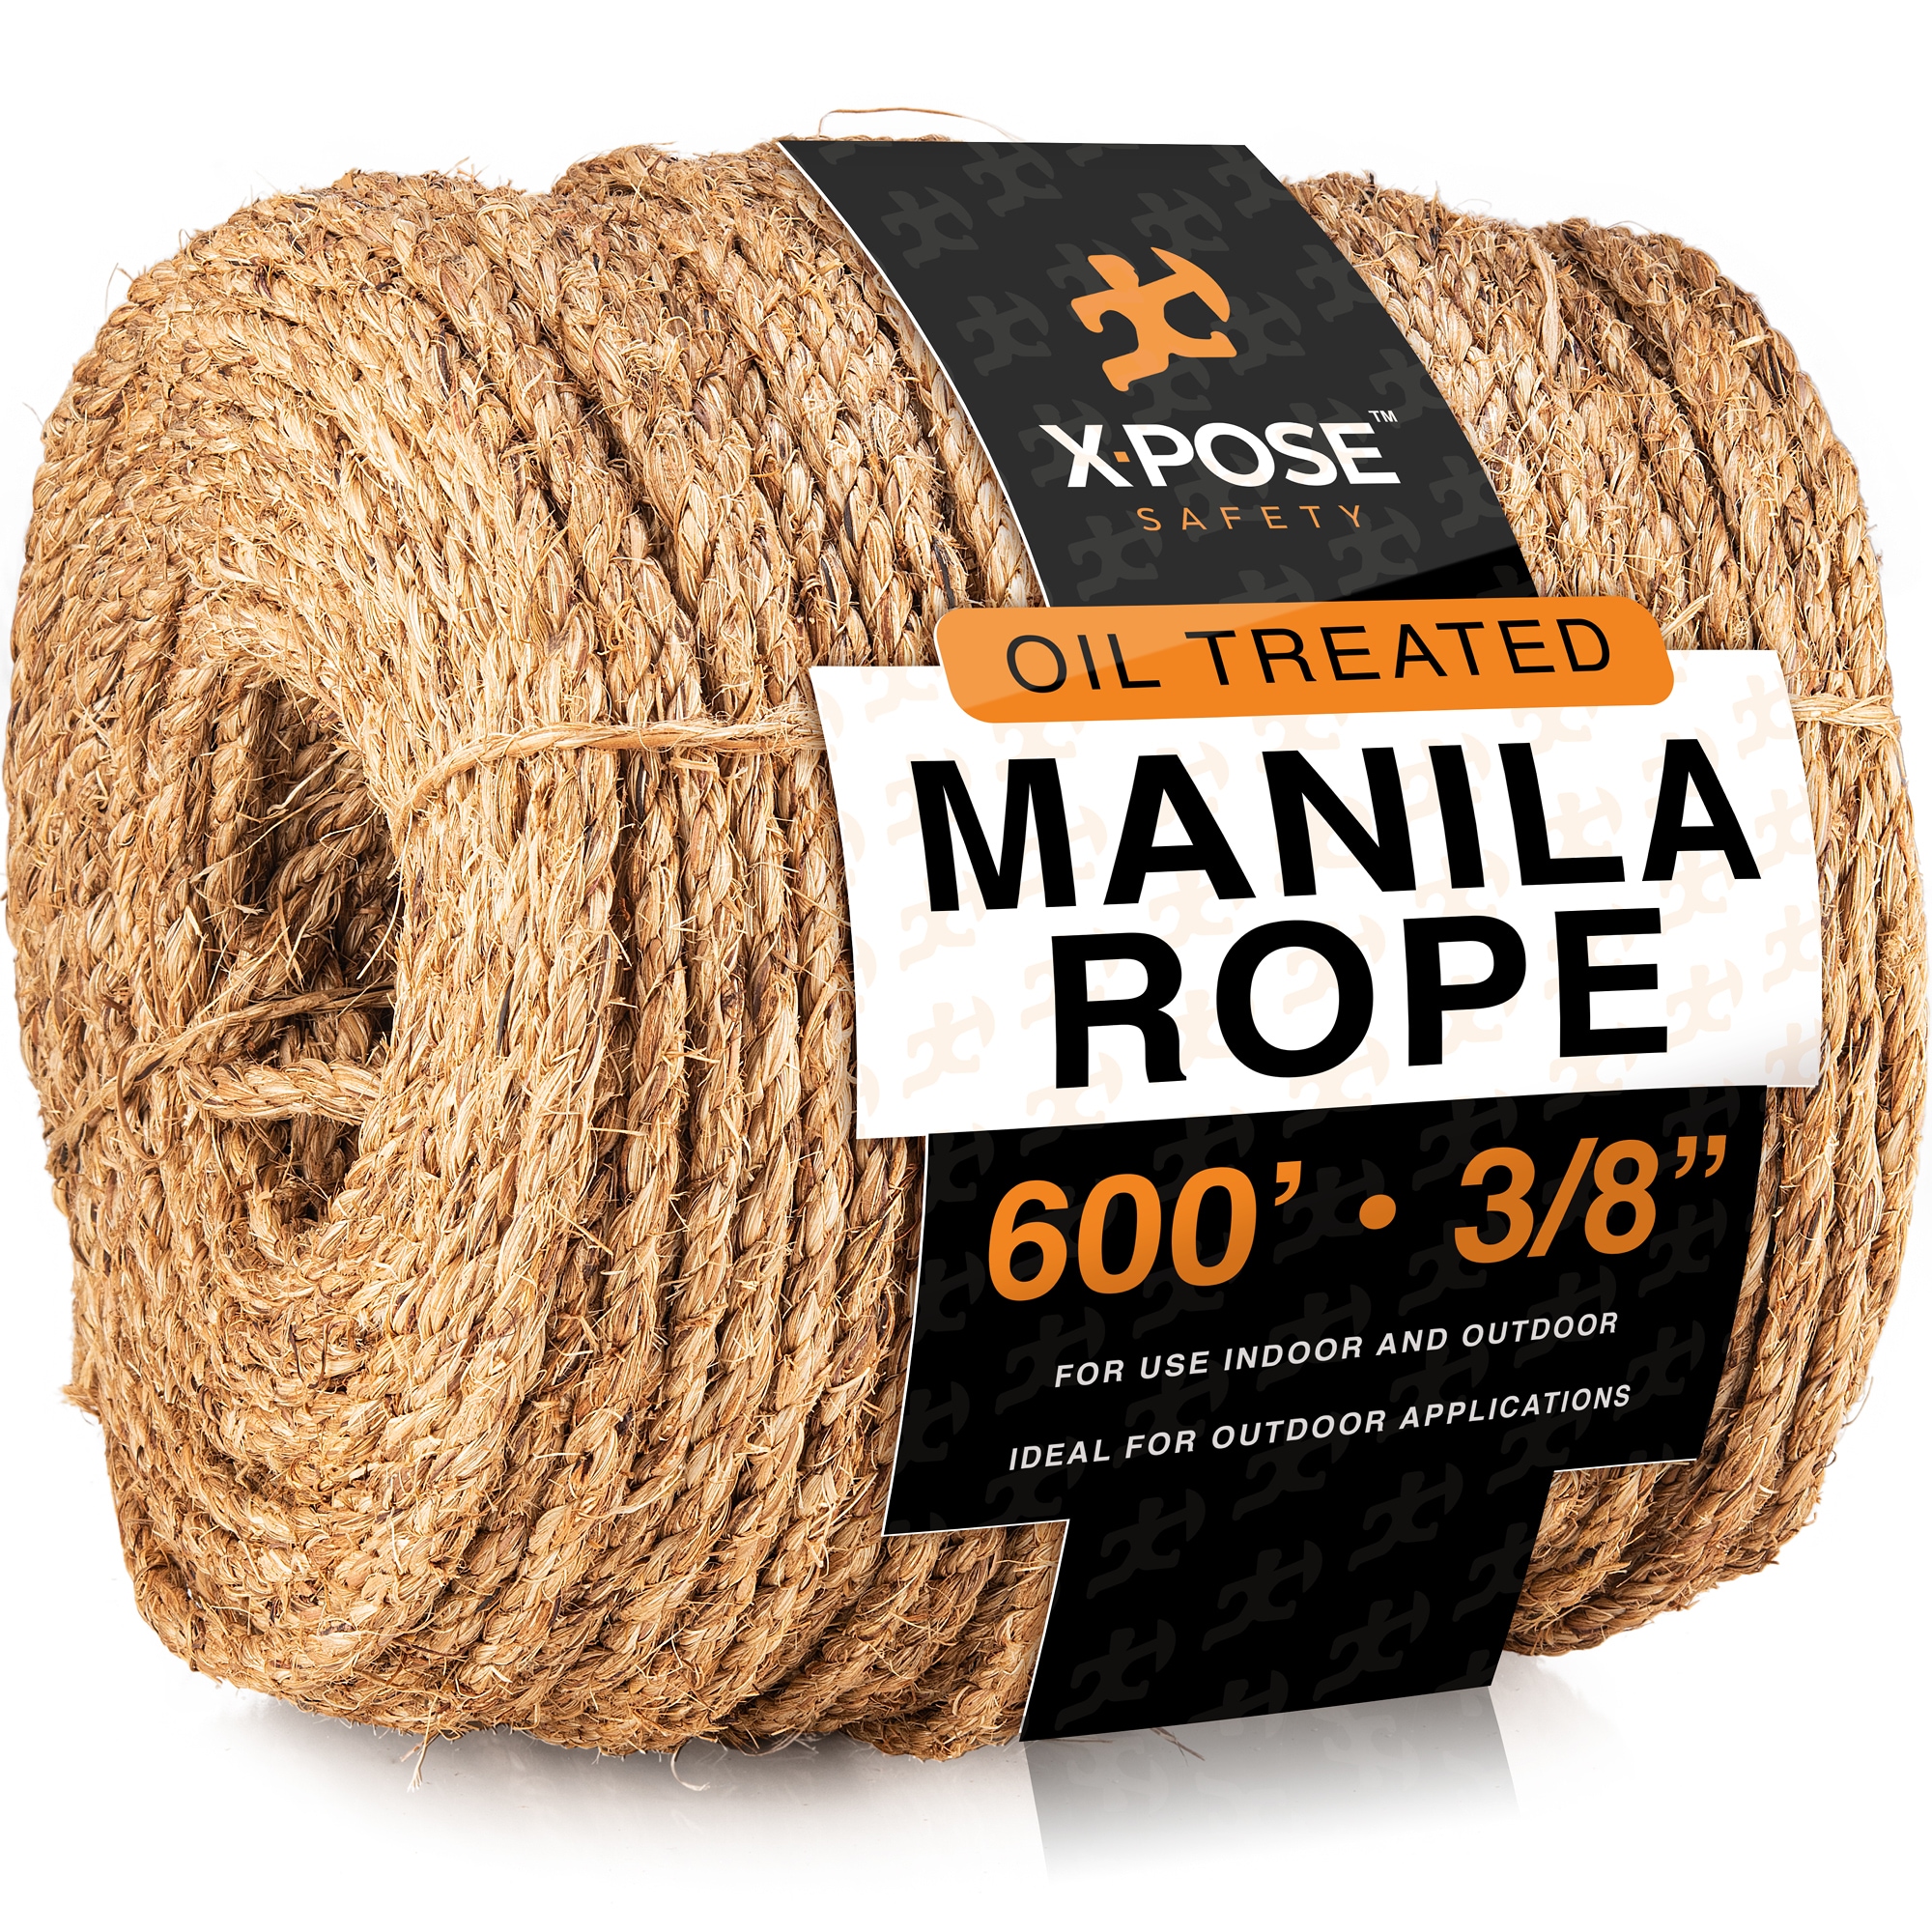 Manila Rope - 3 Strand Cordage Twisted Braided Rope - (3/8 600 Feet)